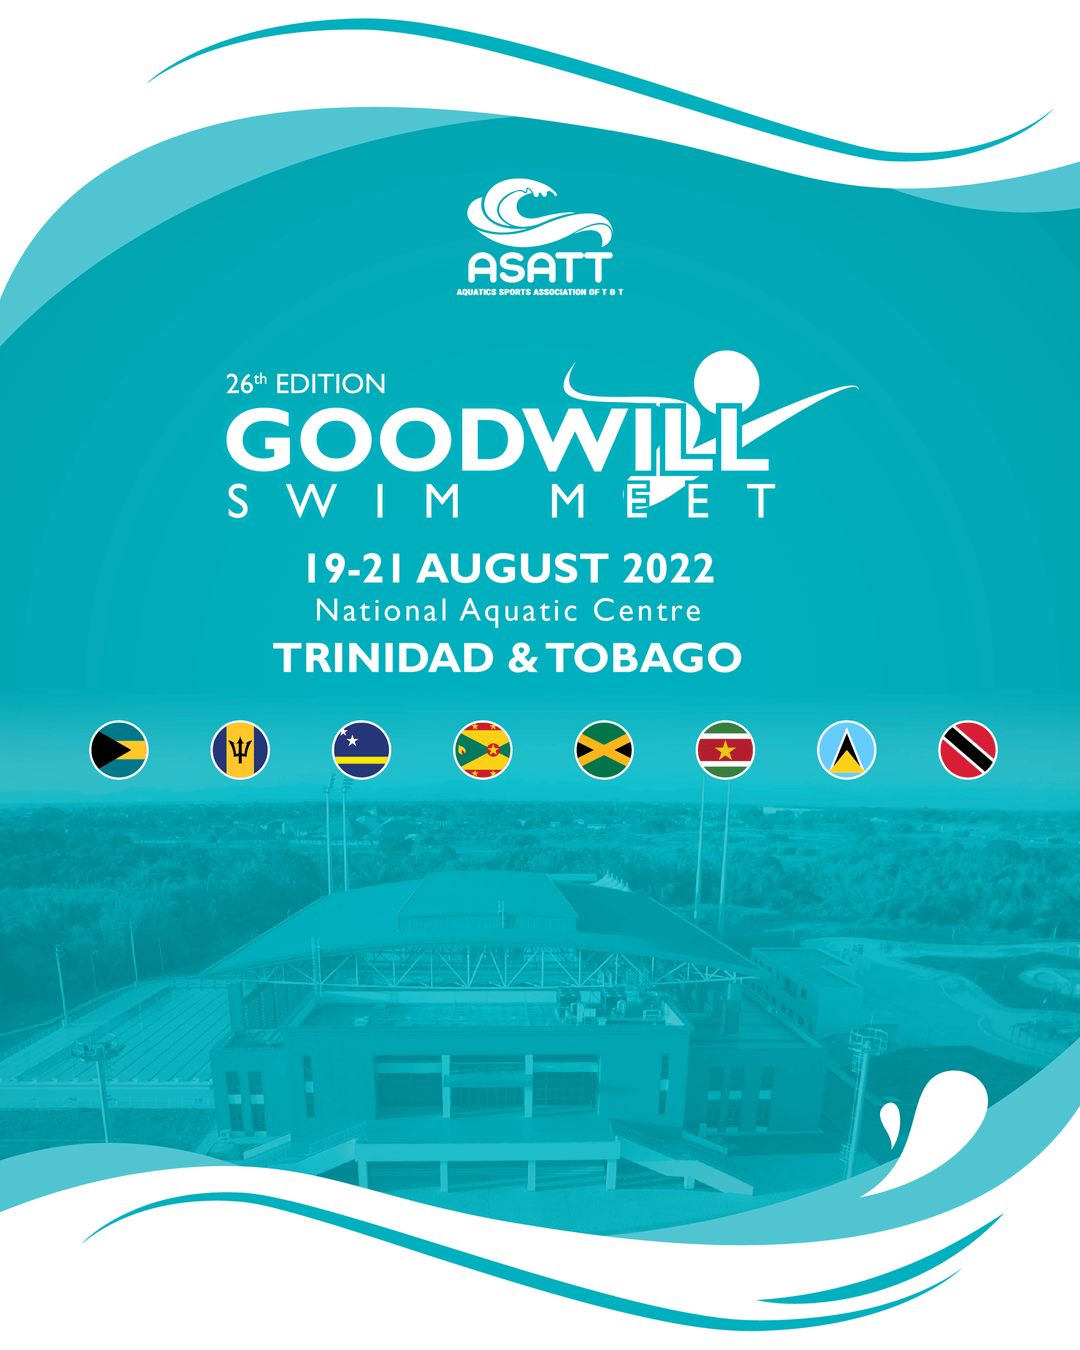 Goodwill Swim Meet Fixtures